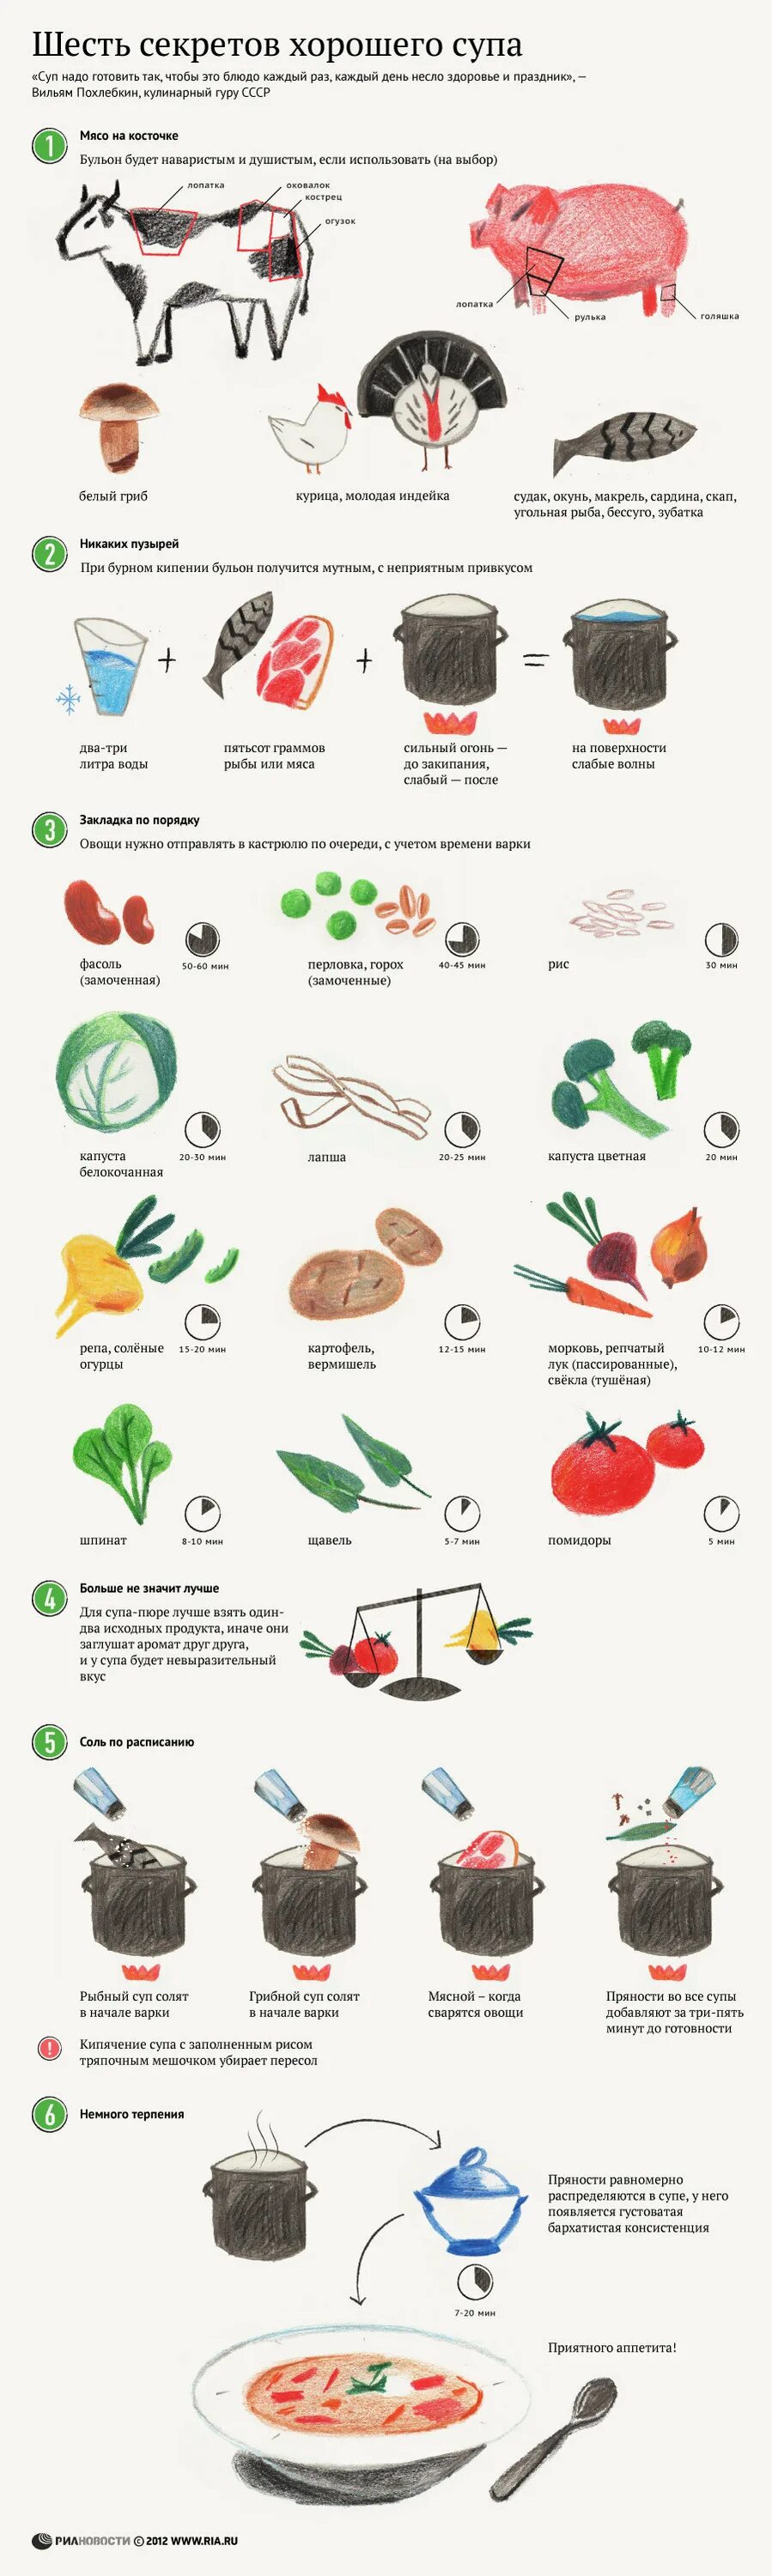 Сроки варки овощей для приготовления. Порядок варки овощей в супе. Шпаргалка супы. Инфографика суп.